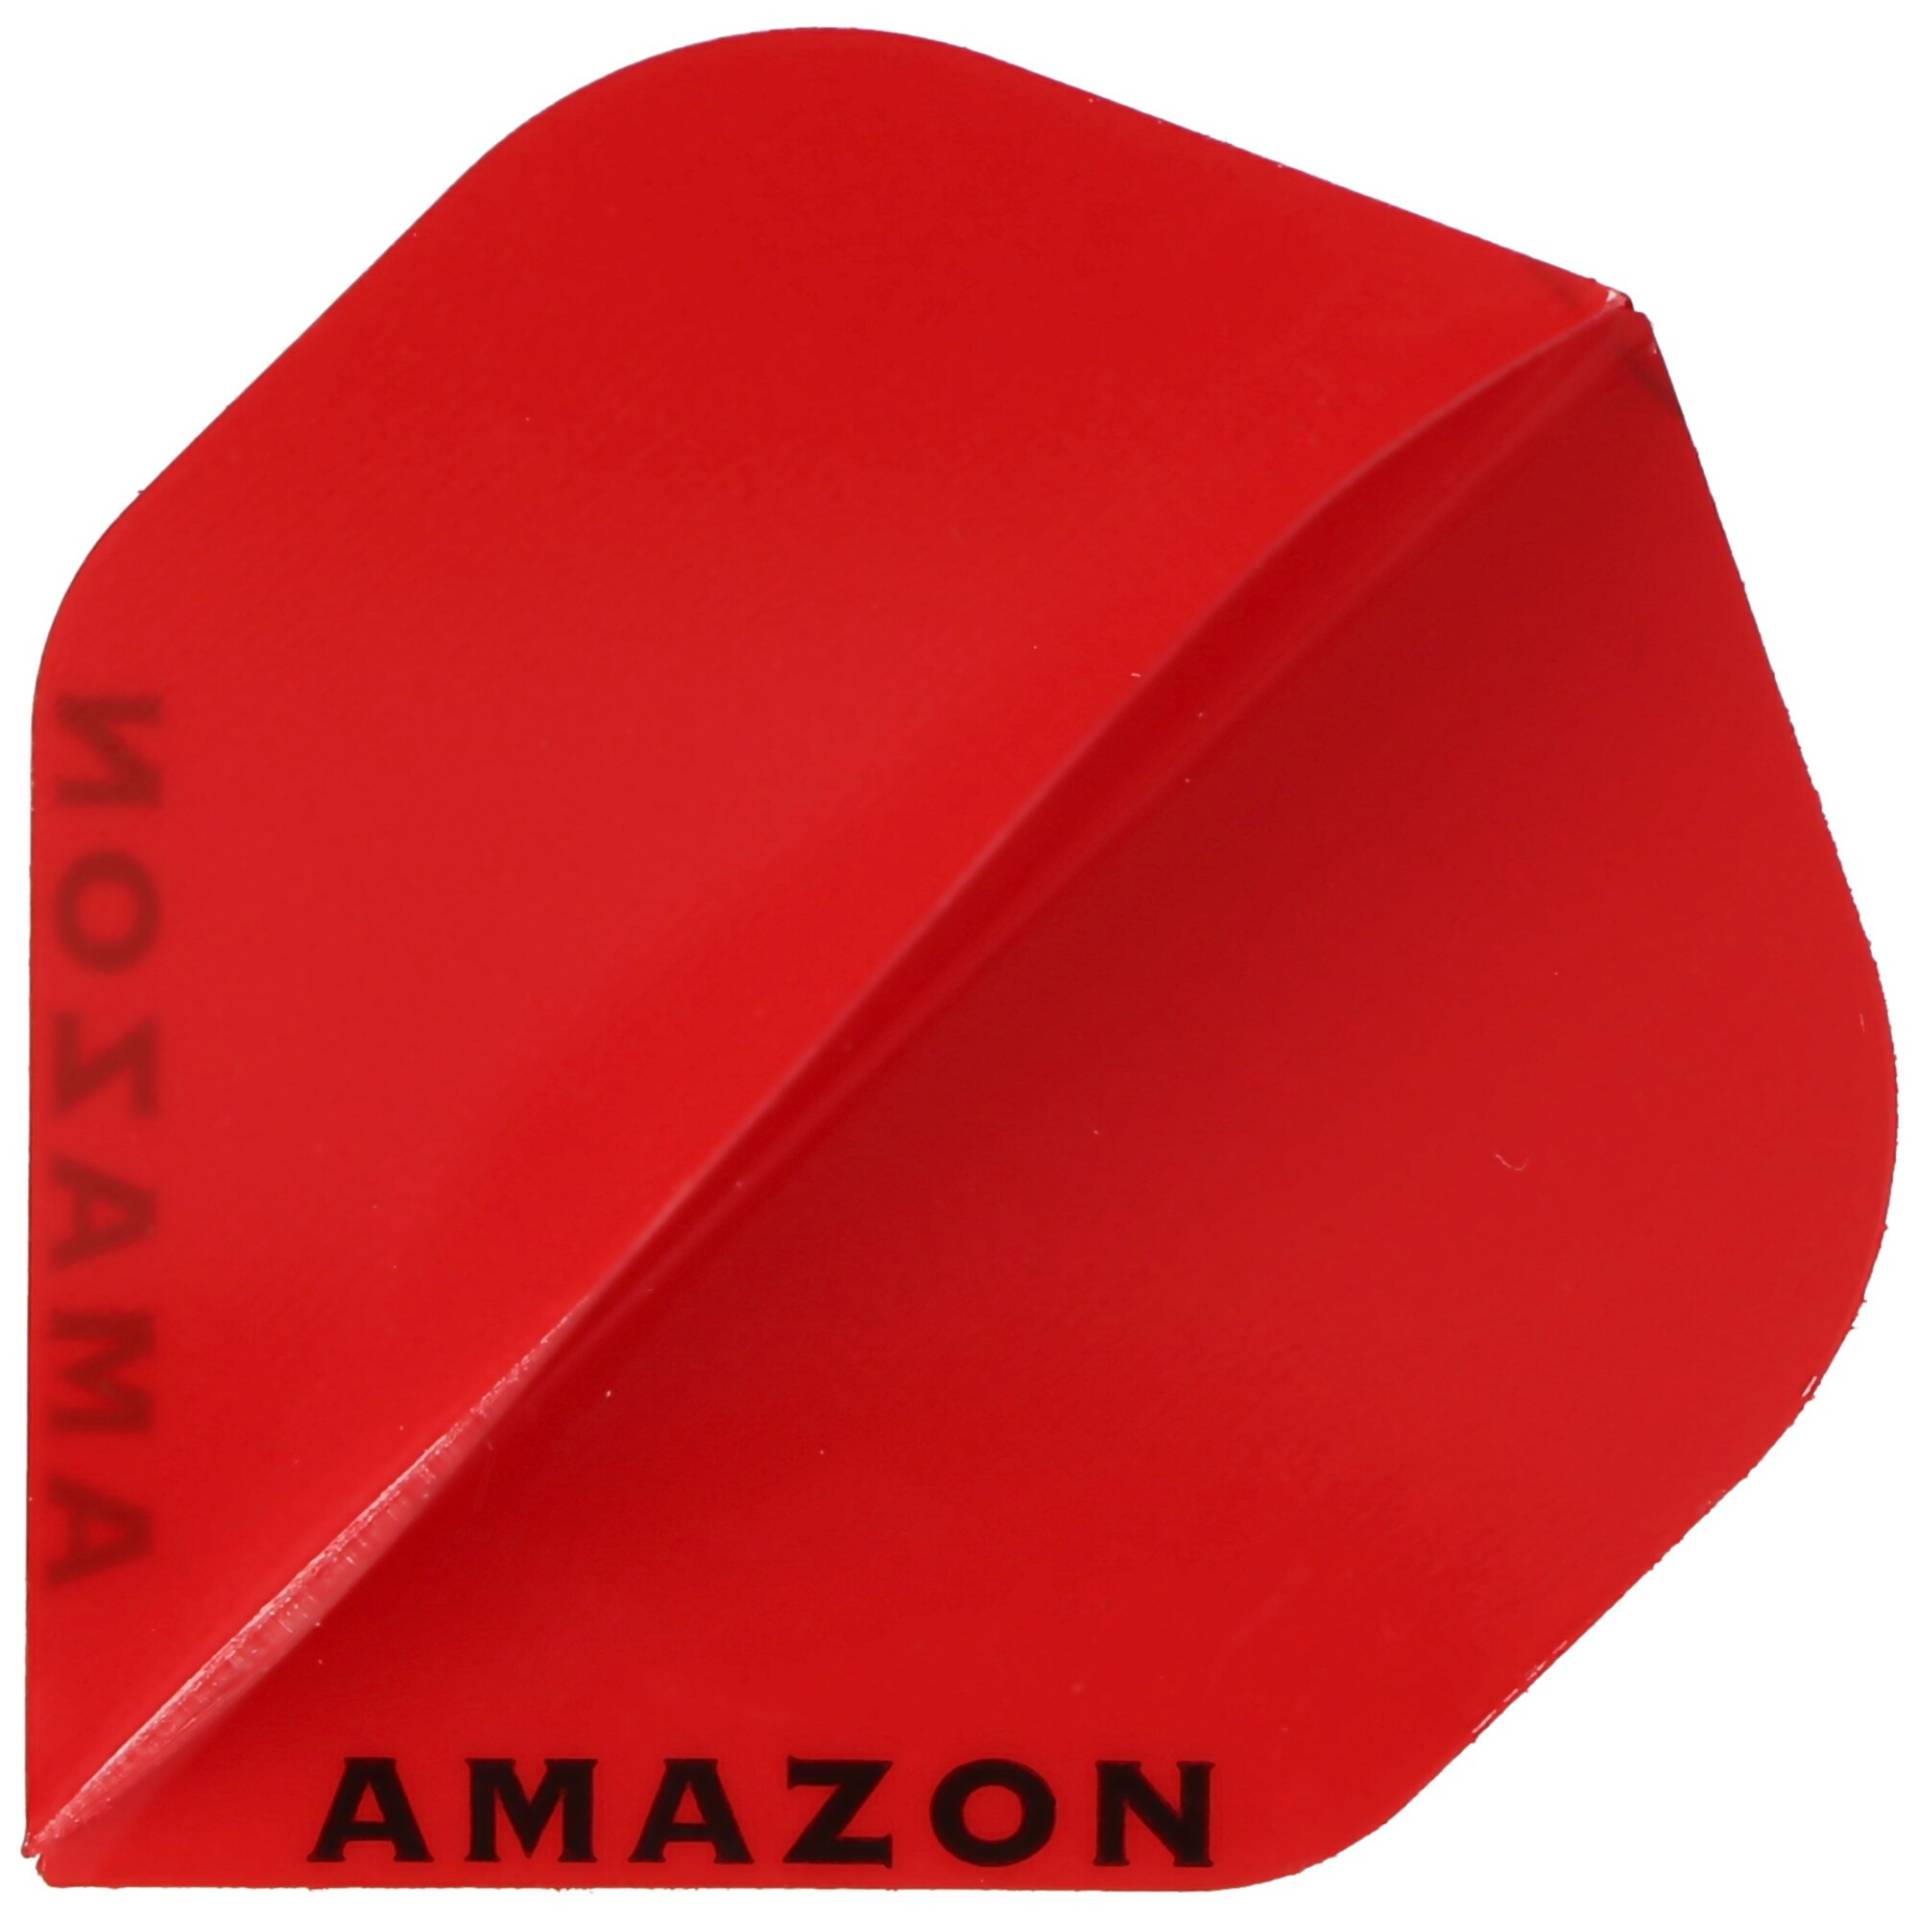 Amazon Flight rot mit schwarzem Aufdruck AMAZON von Pentathlon